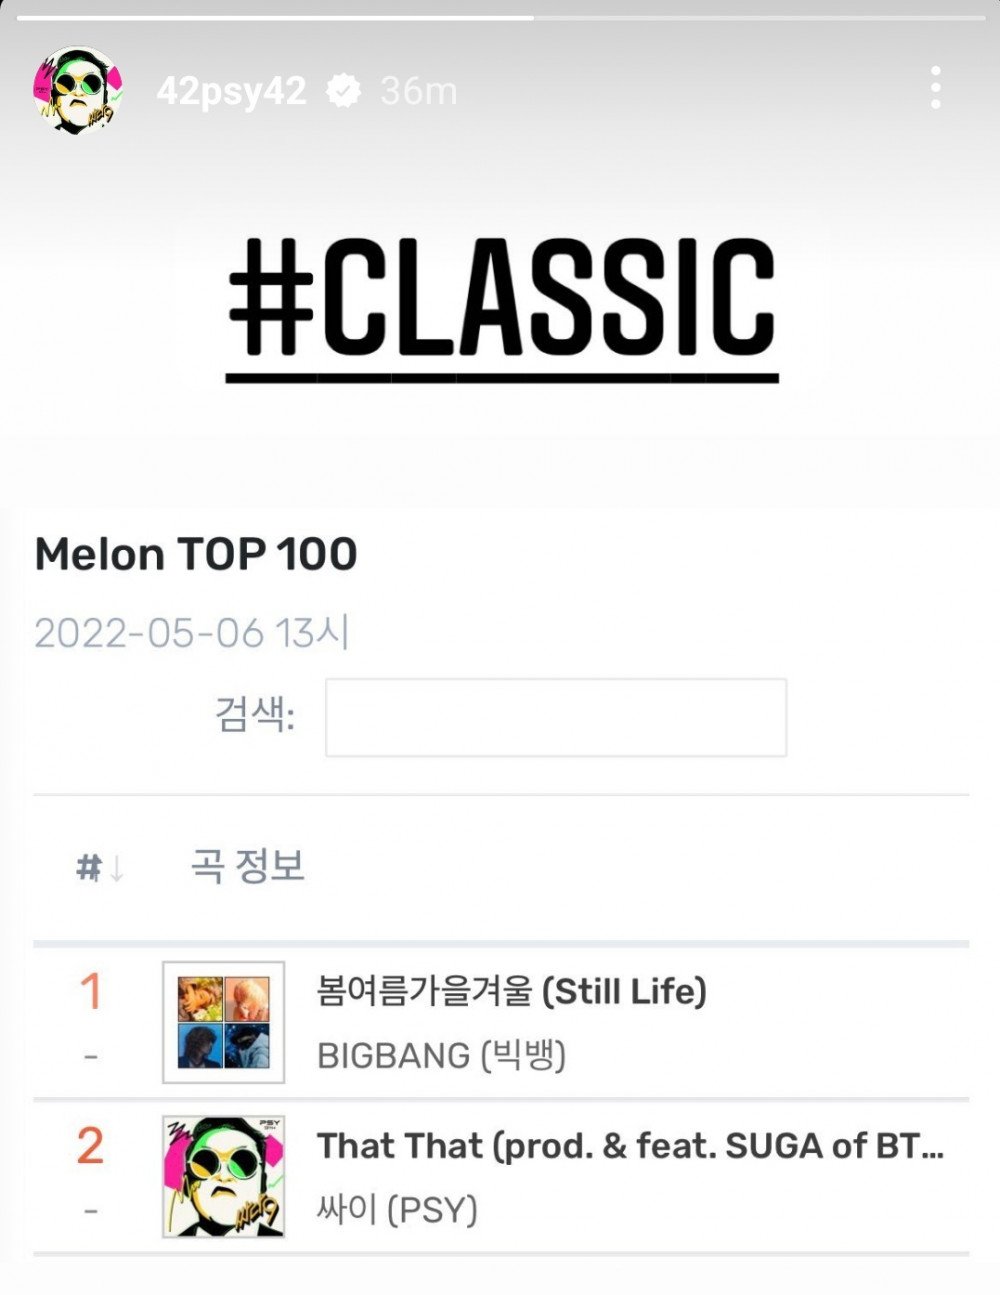 Песня Big Bang "Still Life" остается на вершине Топ-100 Melon более месяца, несмотря на крупные релизы от Psy, Лим Ён Ун и других